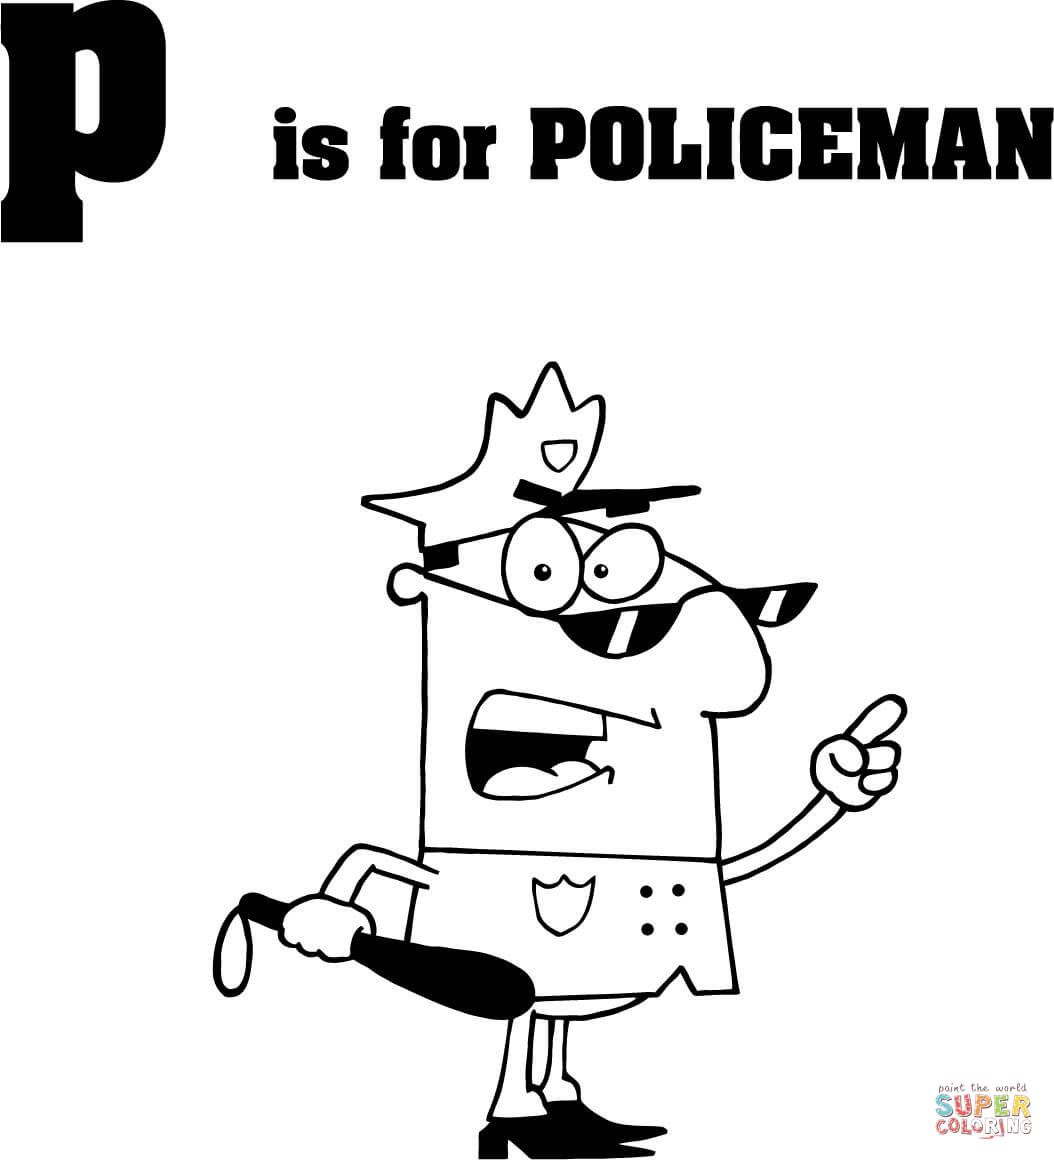 Буква P означает полицейского из буквы P.